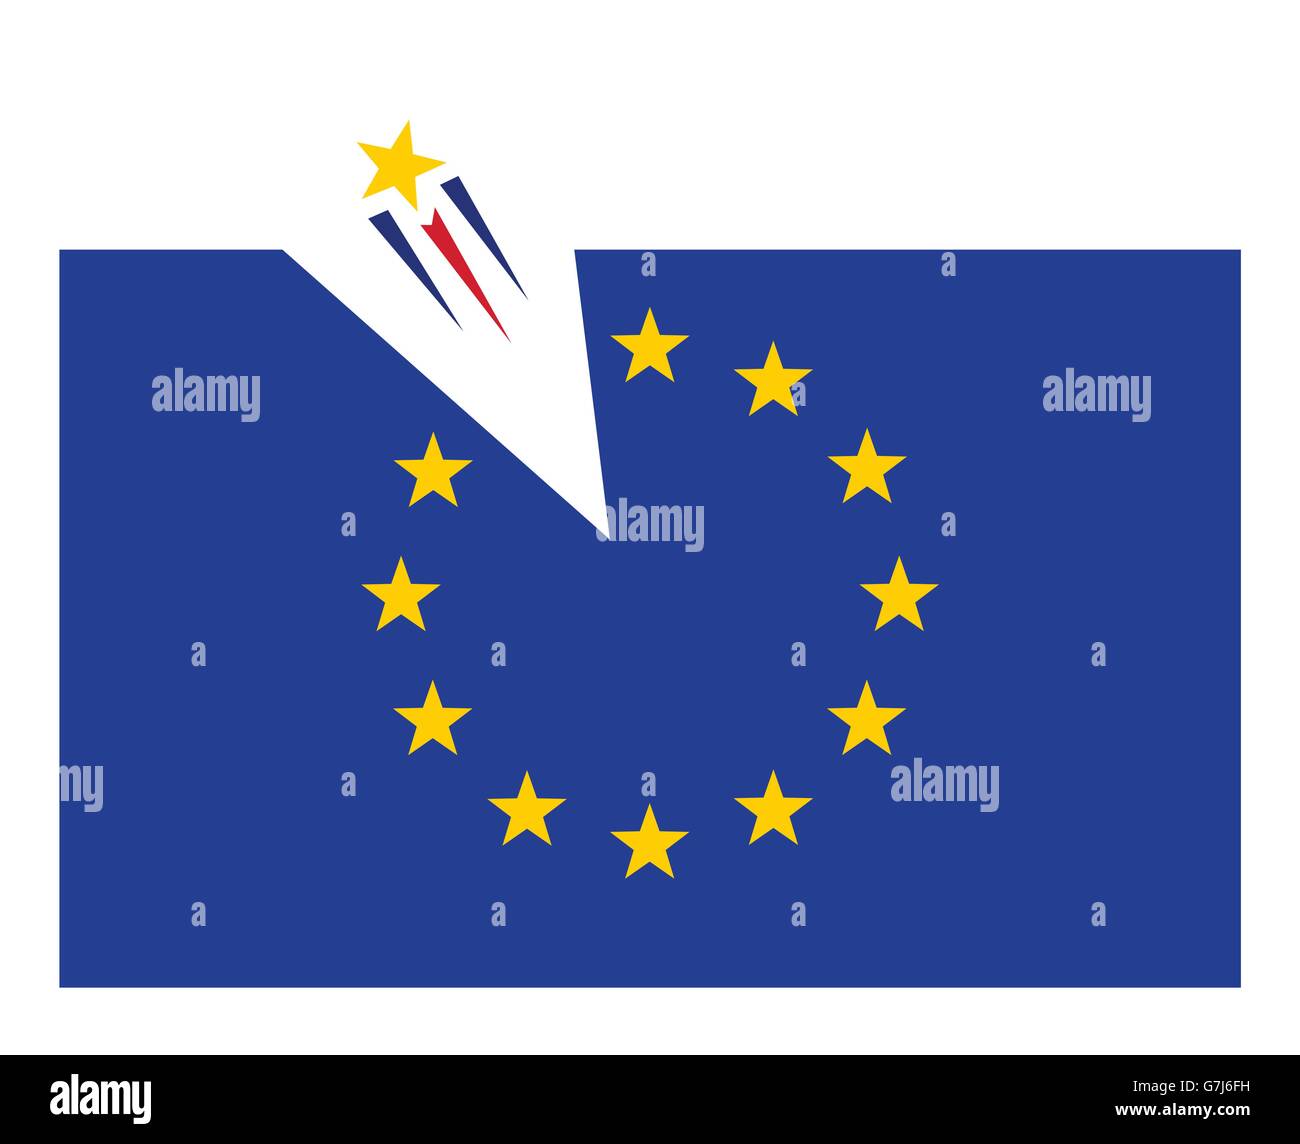 Fliegende Sterne heraus aus europäische Anschluß-Markierungsfahne Vektor-illustration Stock Vektor